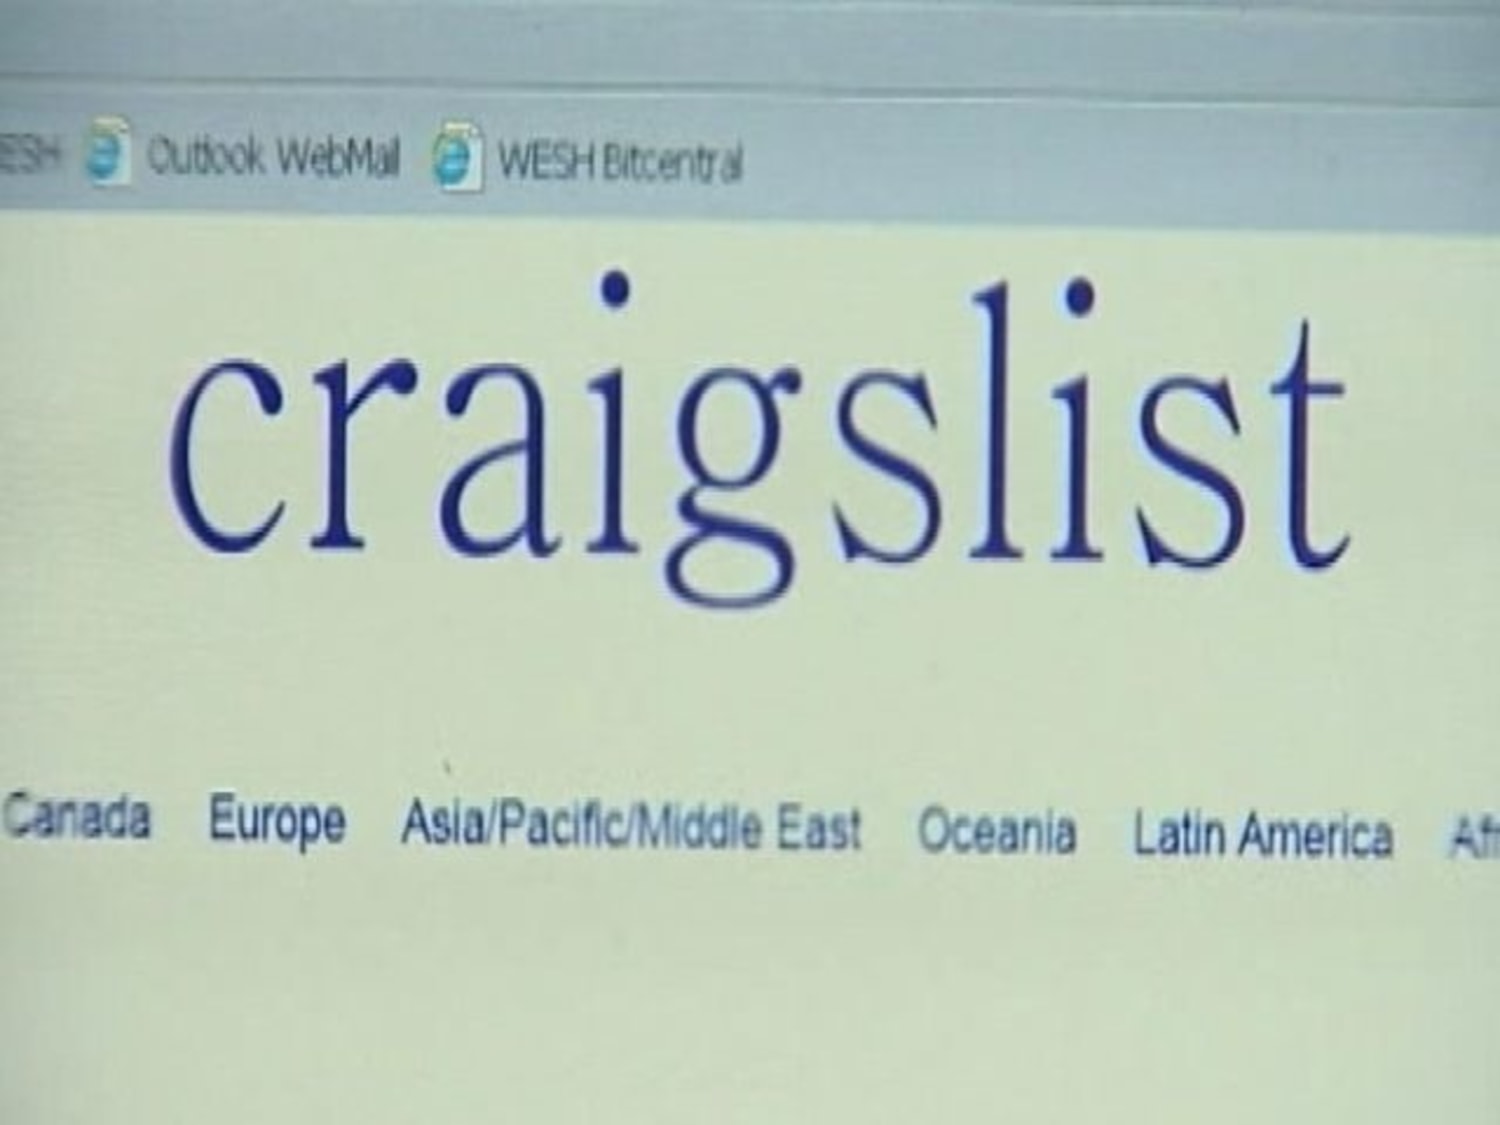 Sex-ad hoax on Craigslist leaves woman terrified